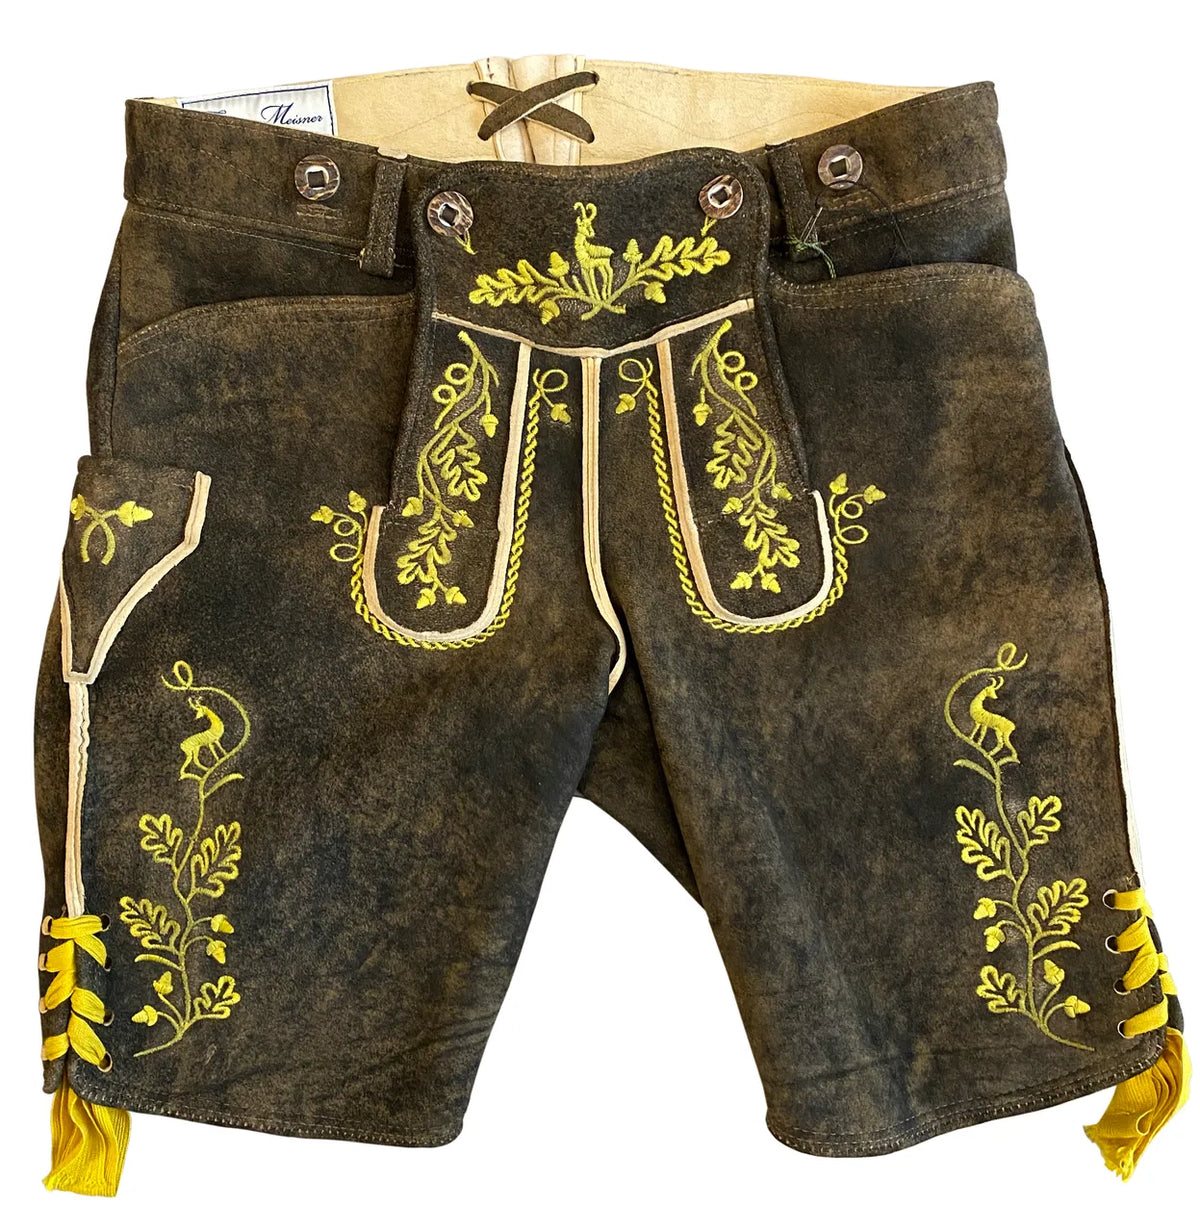 Lederhosen-Men-Sepp-Yellow-Embroidered-Front